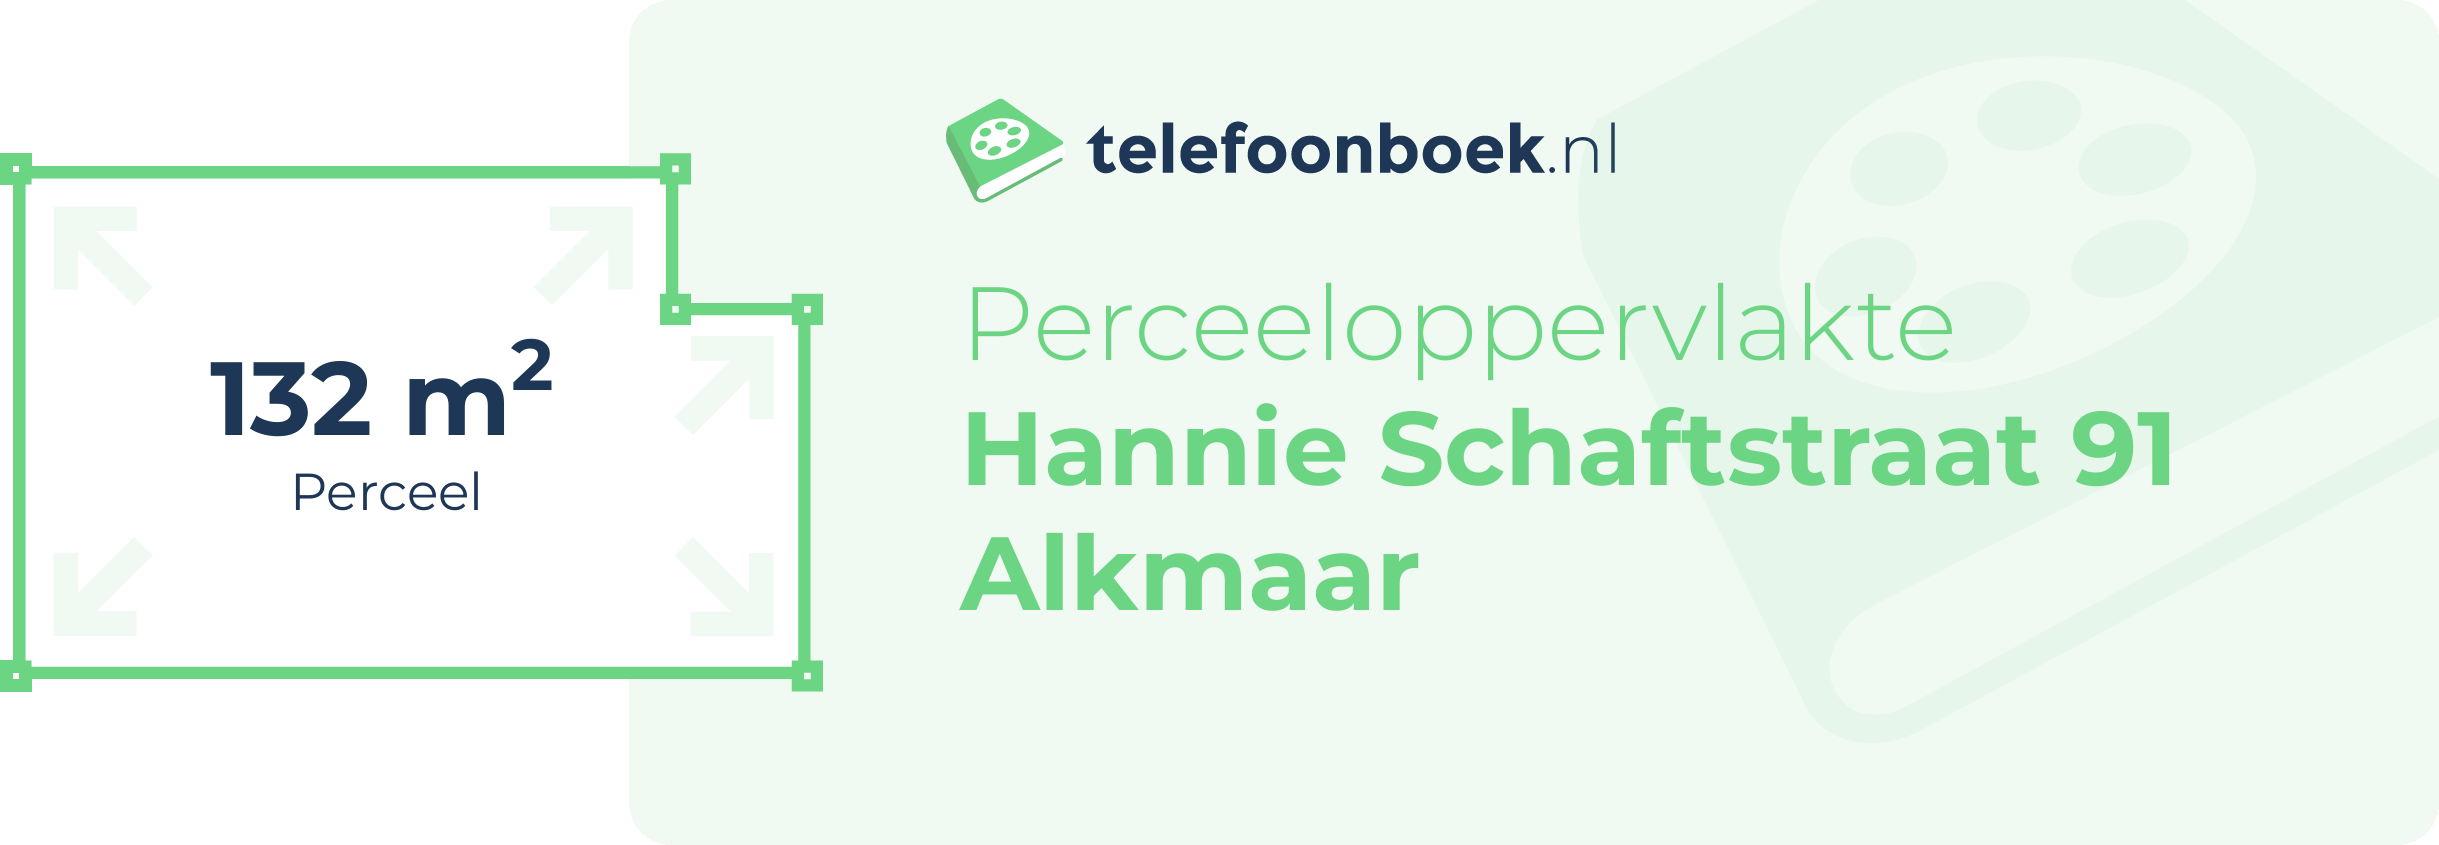 Perceeloppervlakte Hannie Schaftstraat 91 Alkmaar